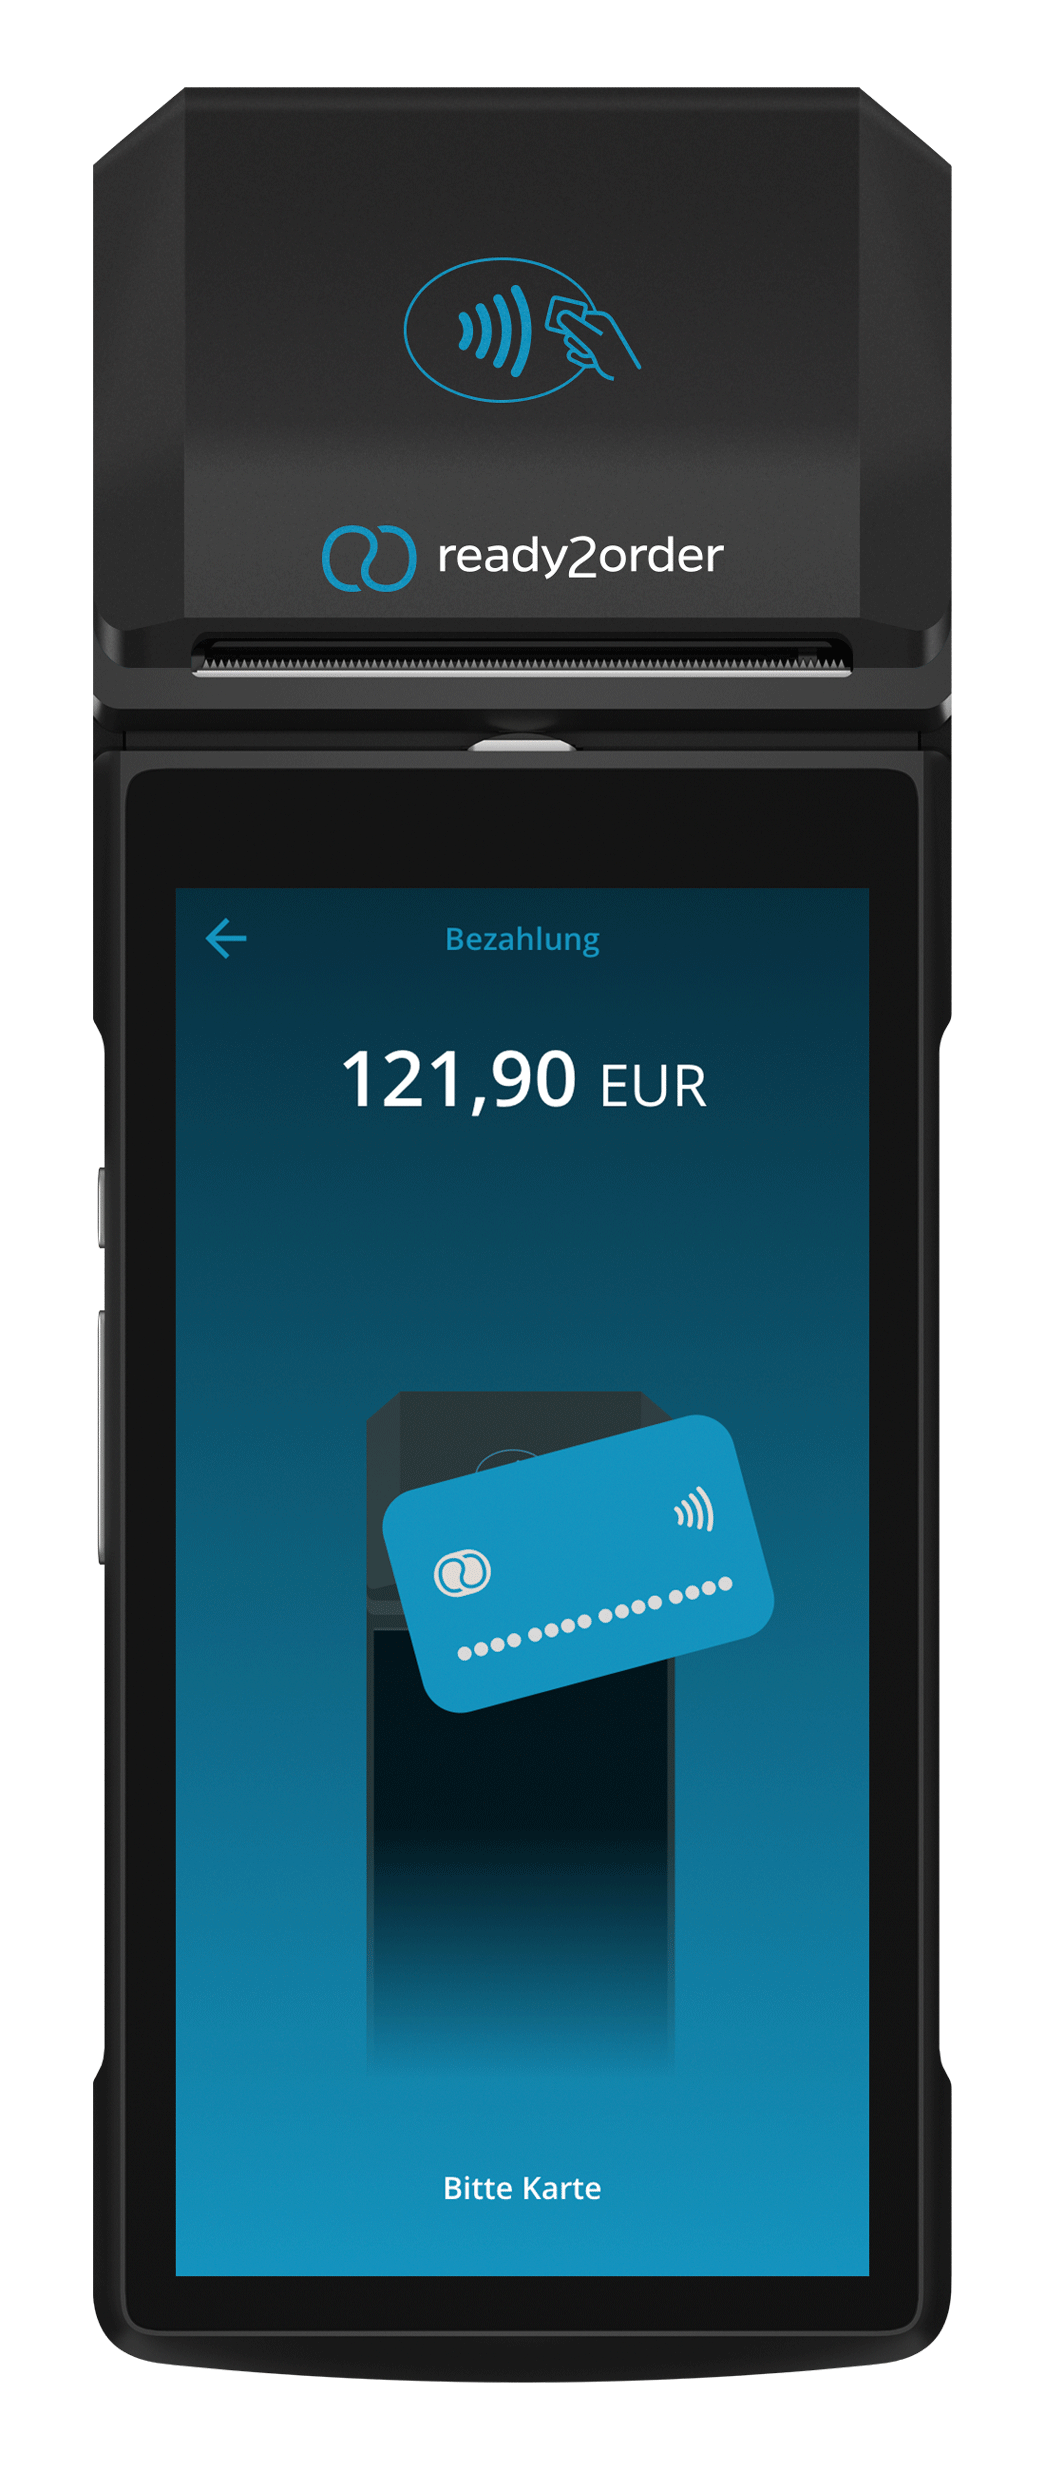 Der neue readyGo mit Payment-Funktion